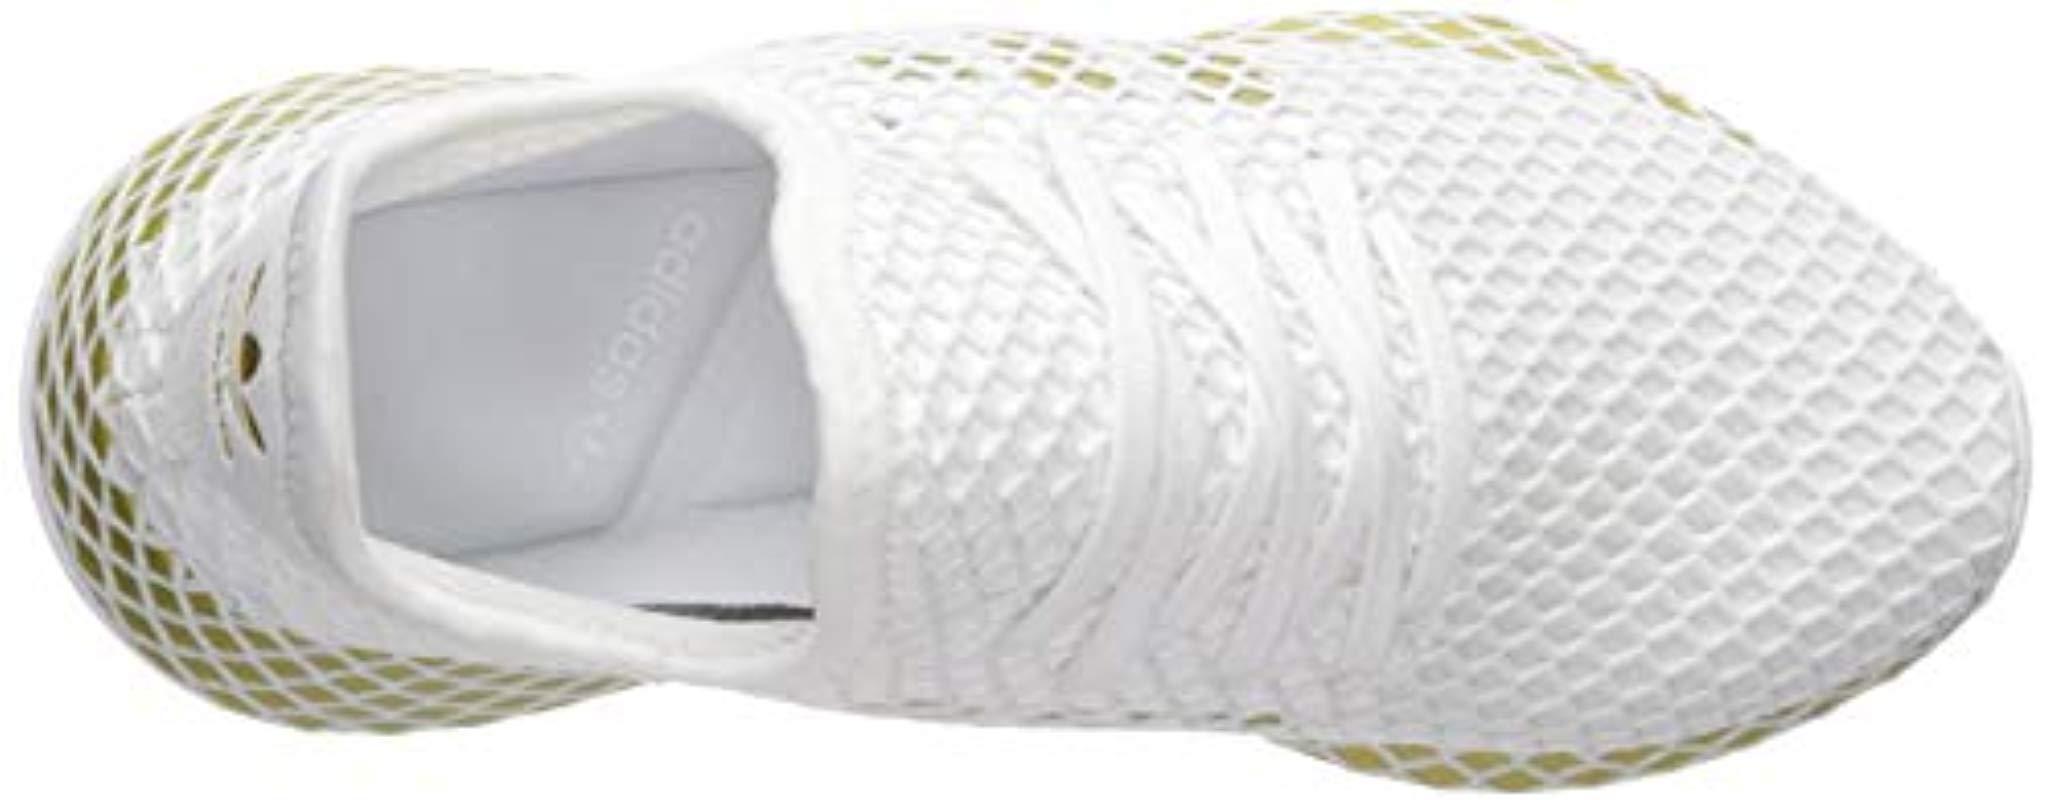 adidas Originals Deerupt Runner in White/Gold Metallic/White (White) - Lyst